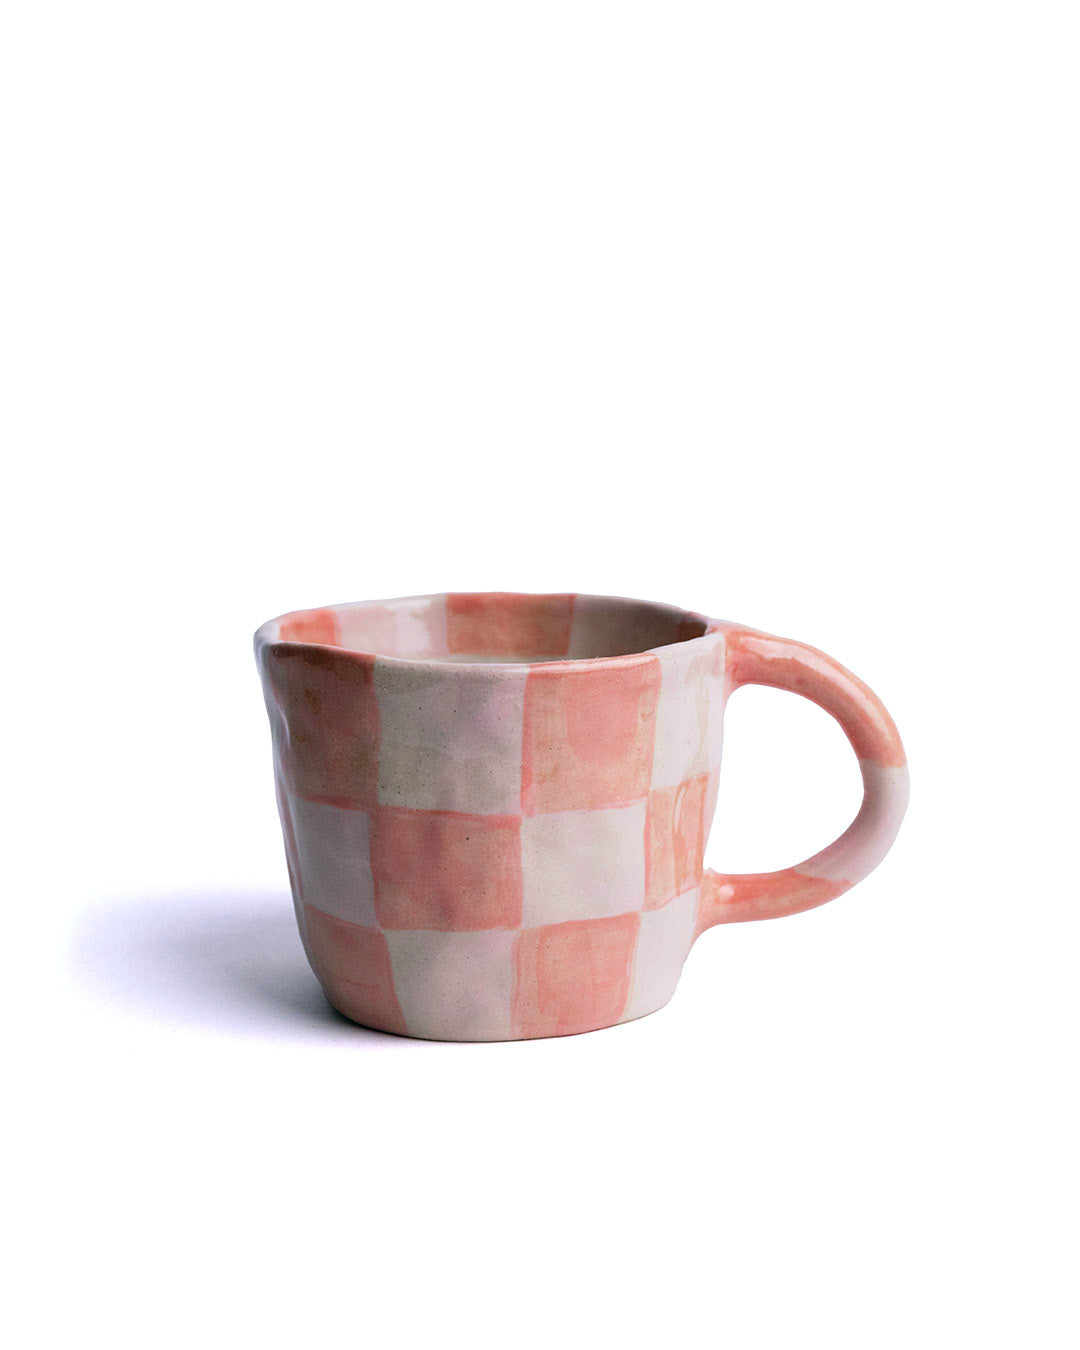 Checkers Mug MIX - Set of 4 (-15%)